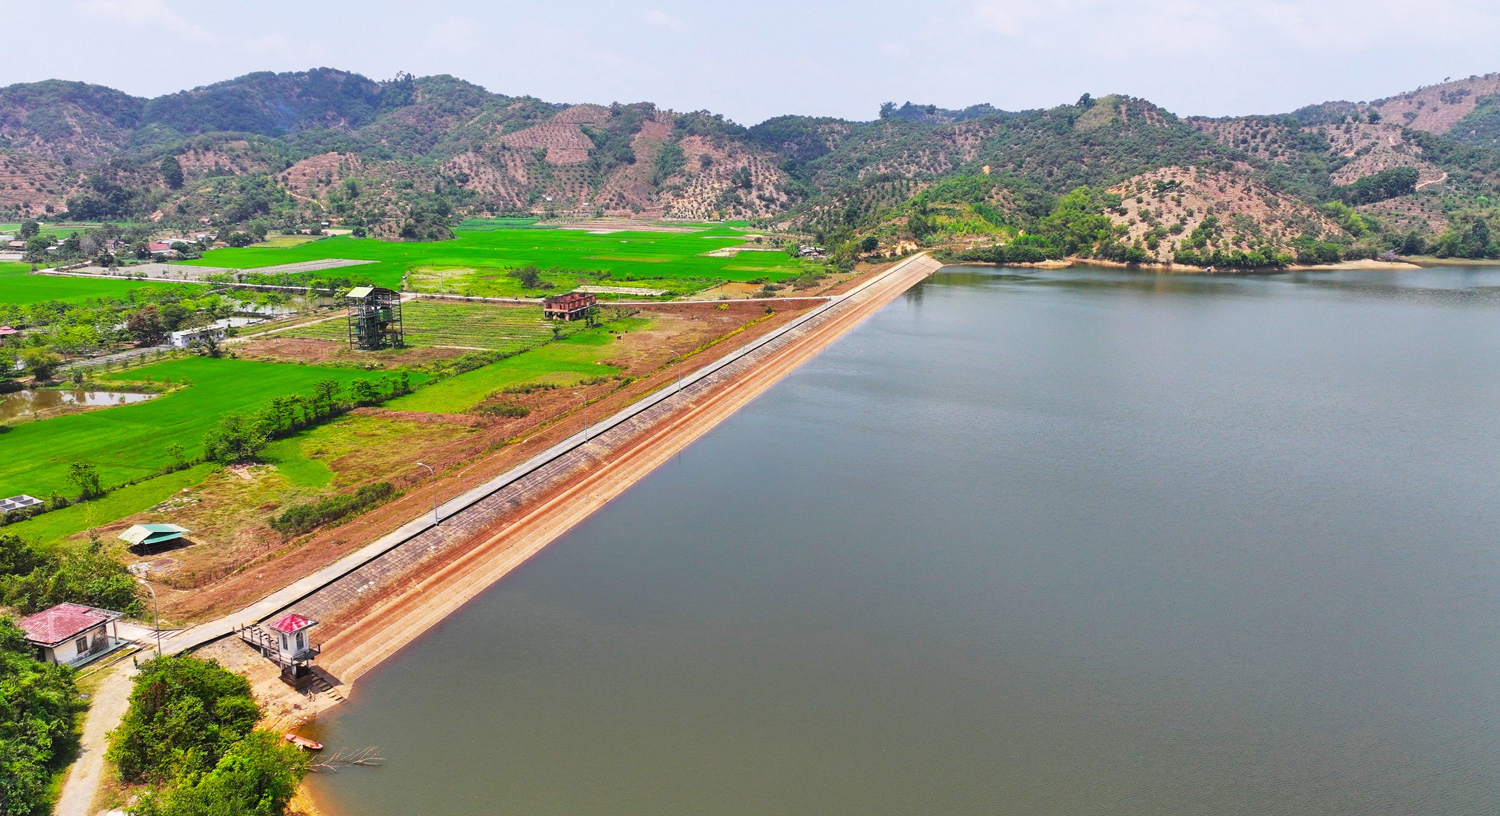 Hầu hết các hồ chứa phục vụ sản xuất lúa trên địa bàn huyện Đạ Tẻh đang có nguồn nước dồi dào phục vụ sản xuất của người dân